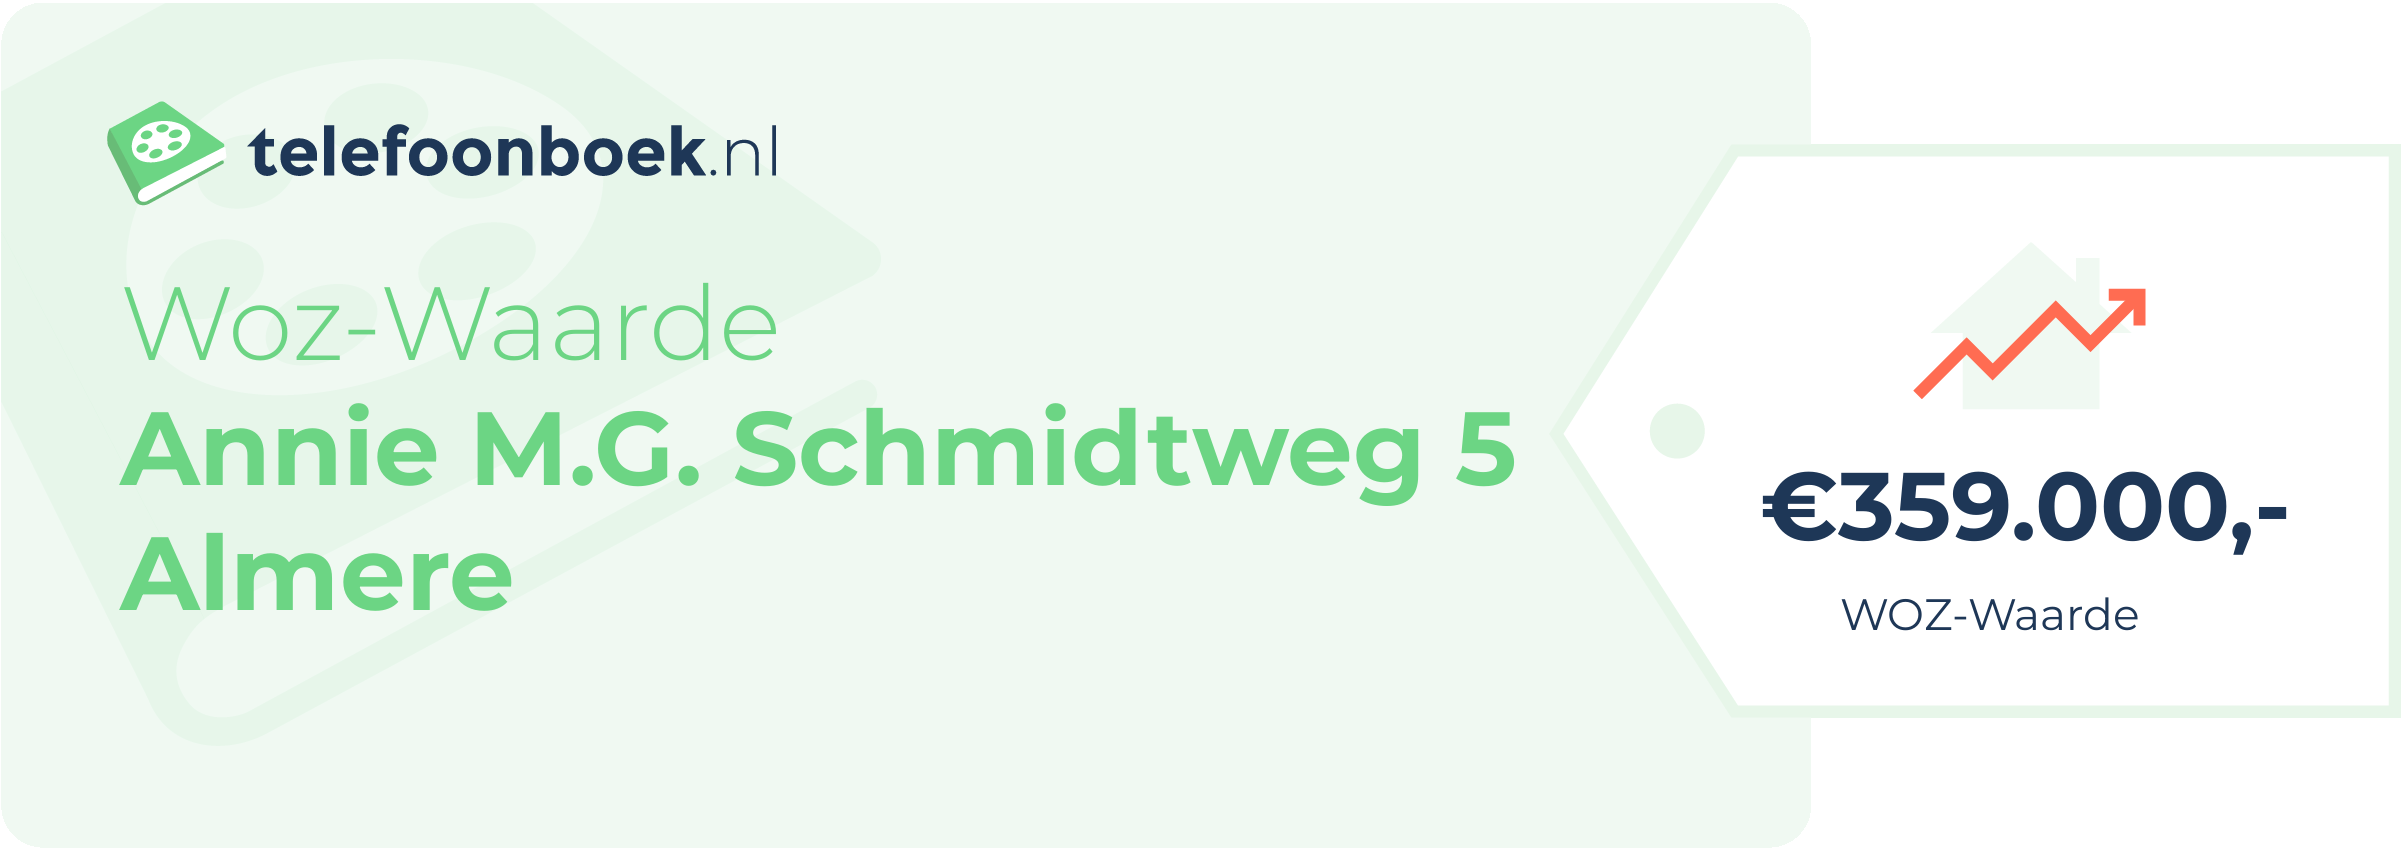 WOZ-waarde Annie M.G. Schmidtweg 5 Almere